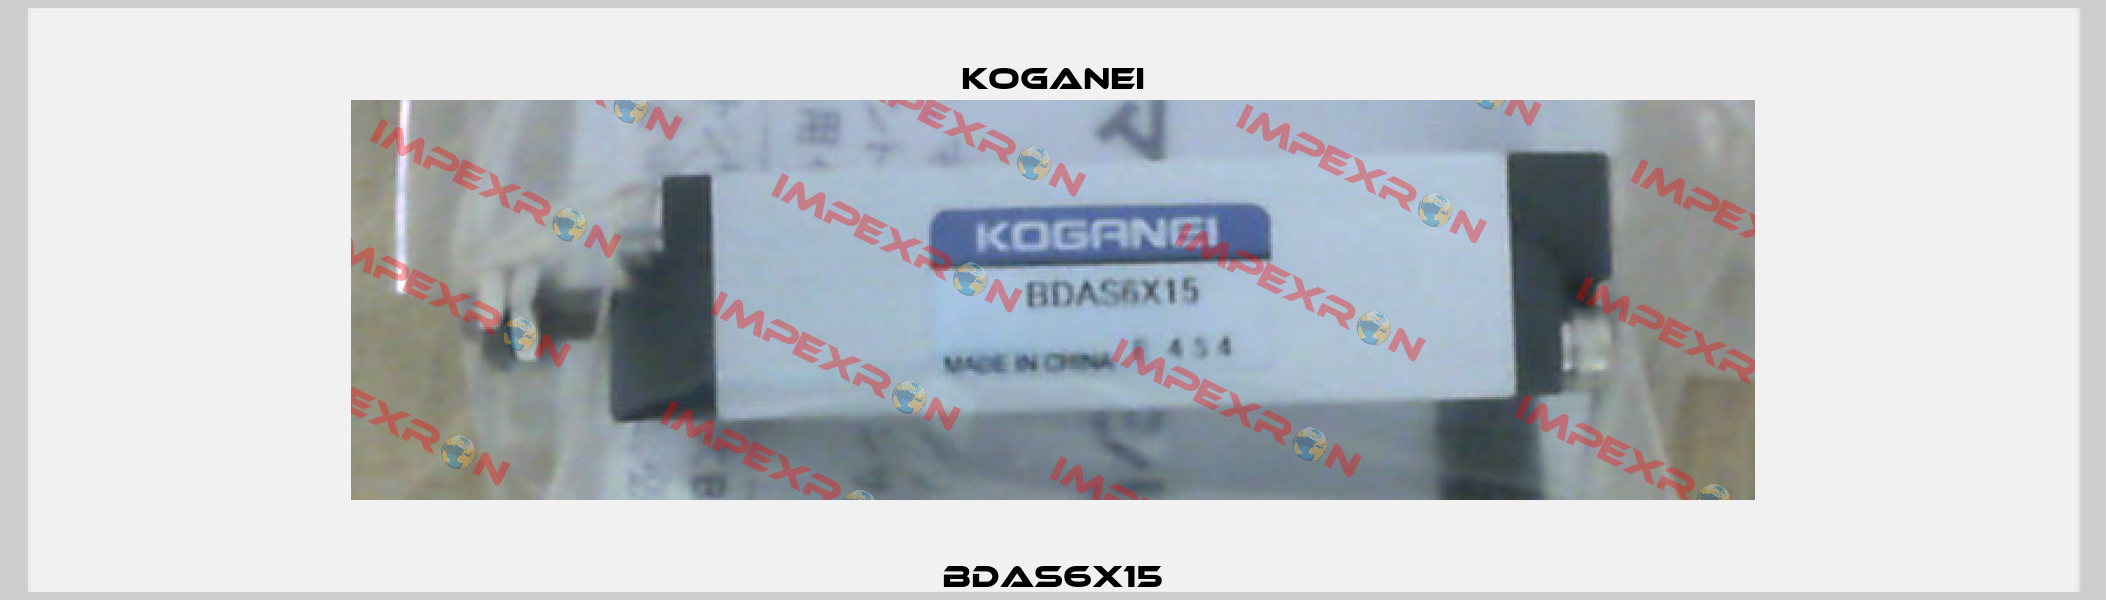 BDAS6X15 Koganei